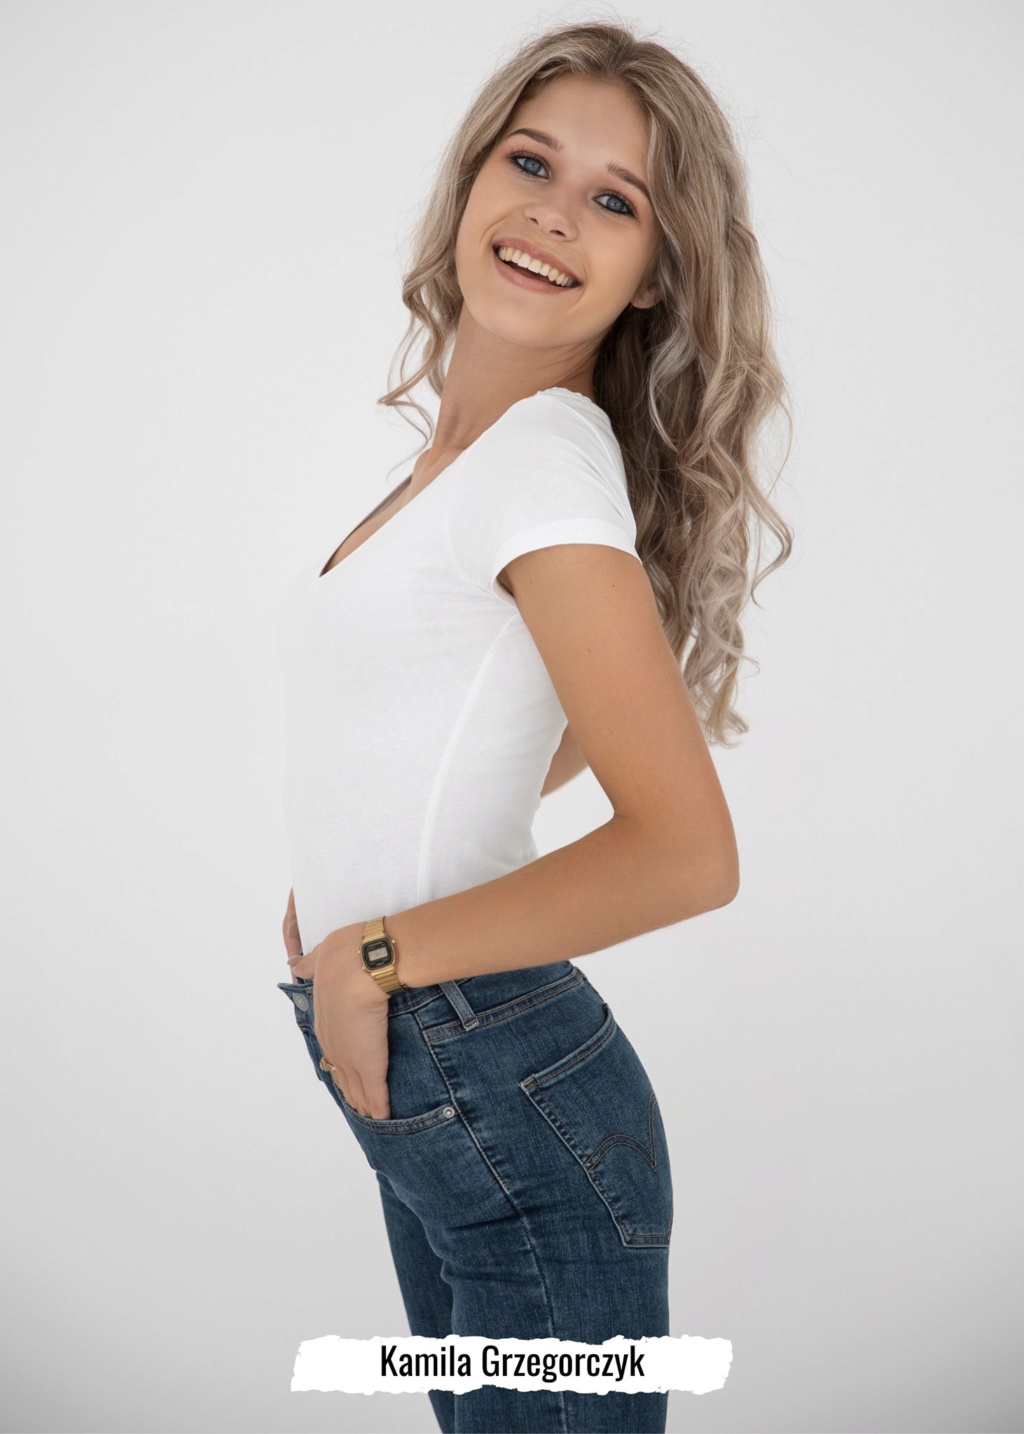 Road to Miss Polski 2021 is Agata Wdowiak from Łodź 21998111